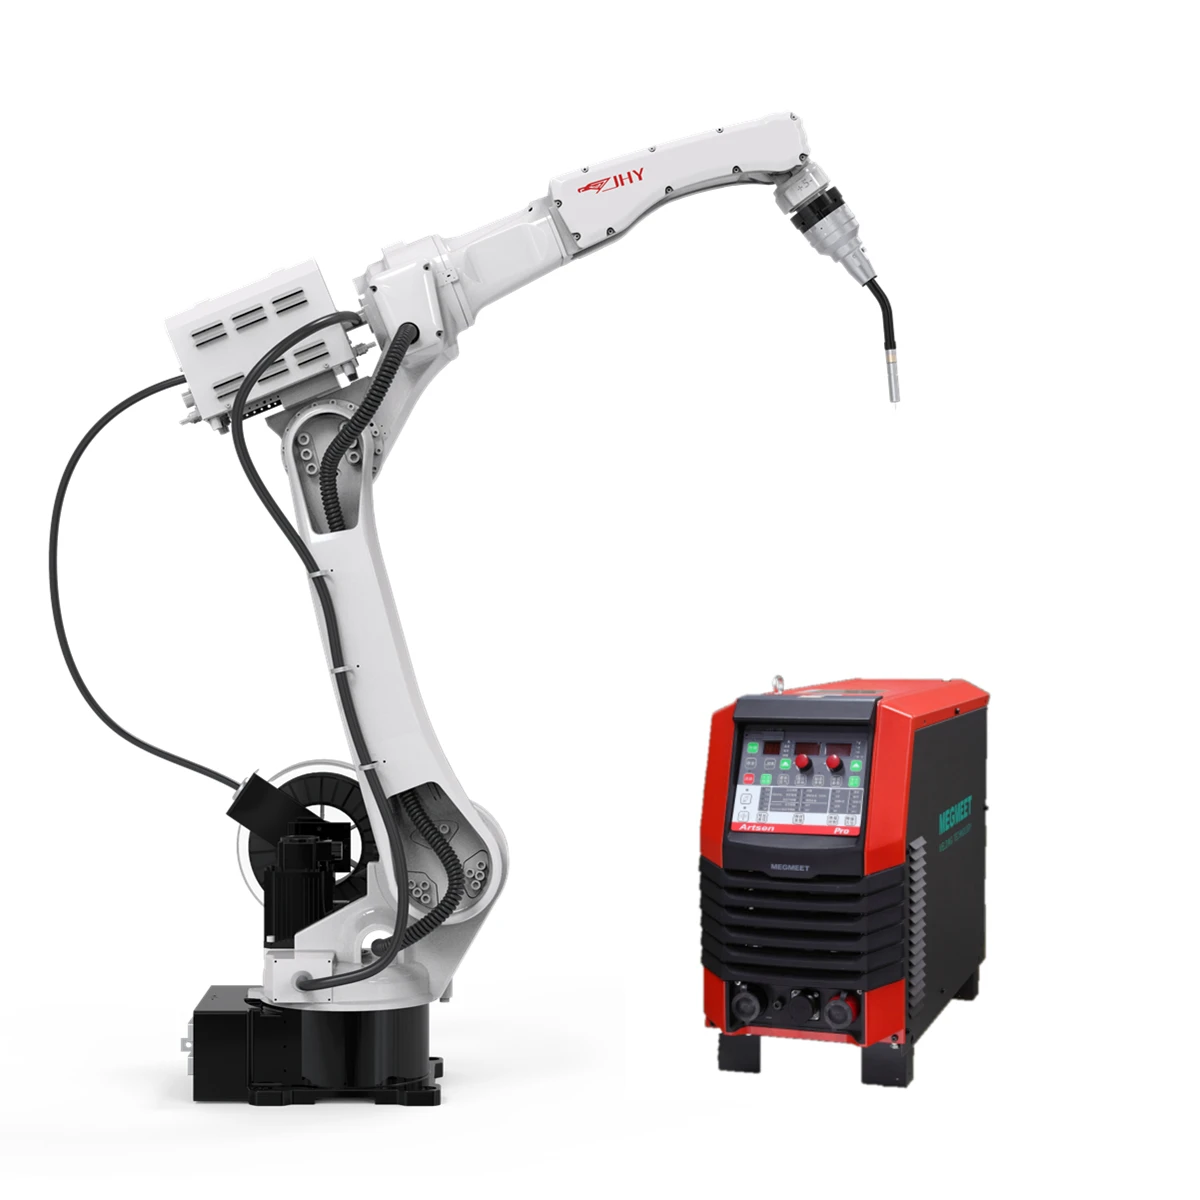 China OEM industrial Welding Robot Machine / MIG Welding Equipment